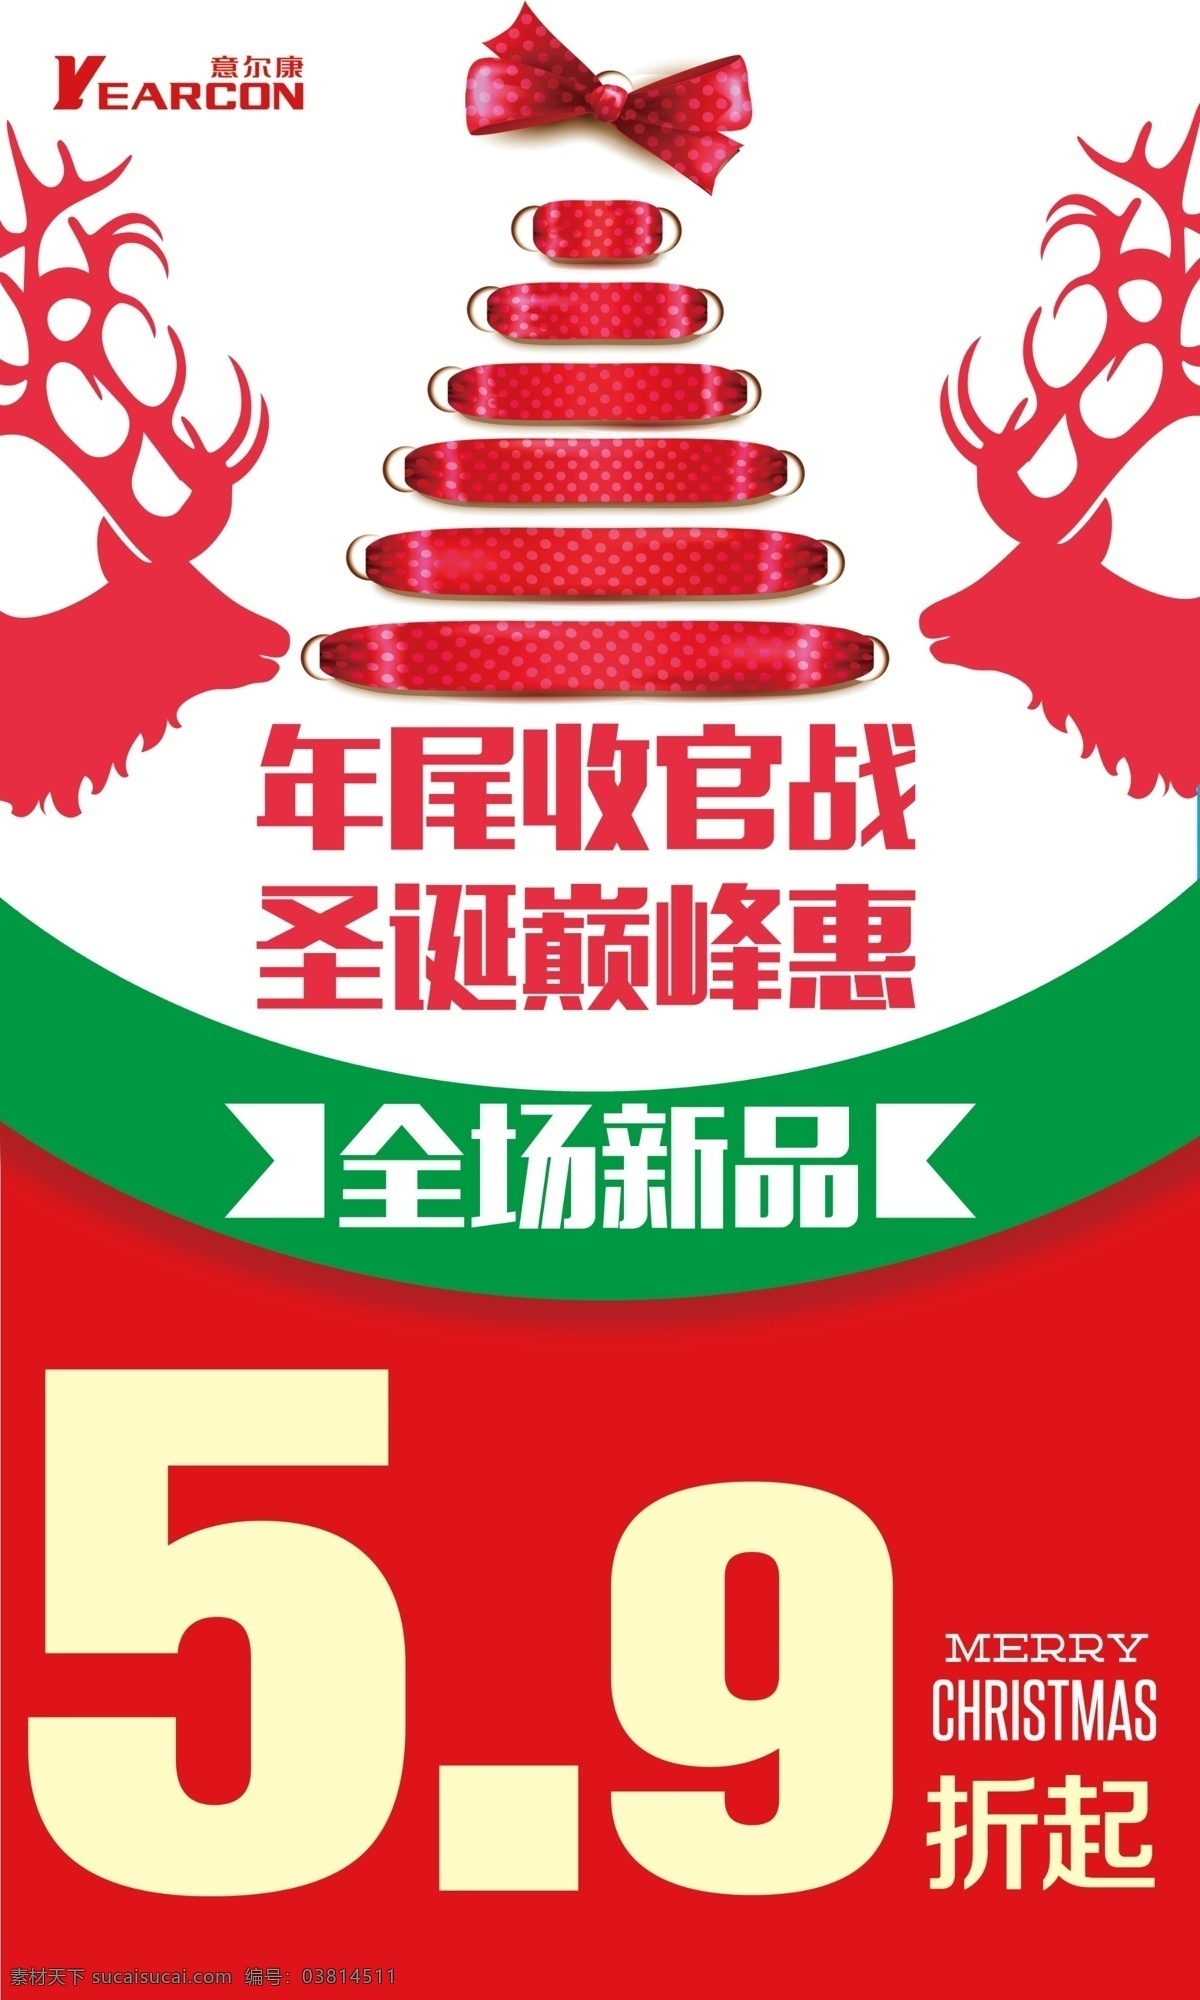 圣诞活动海报 圣诞节 圣诞节促销 圣诞节折扣 麋鹿